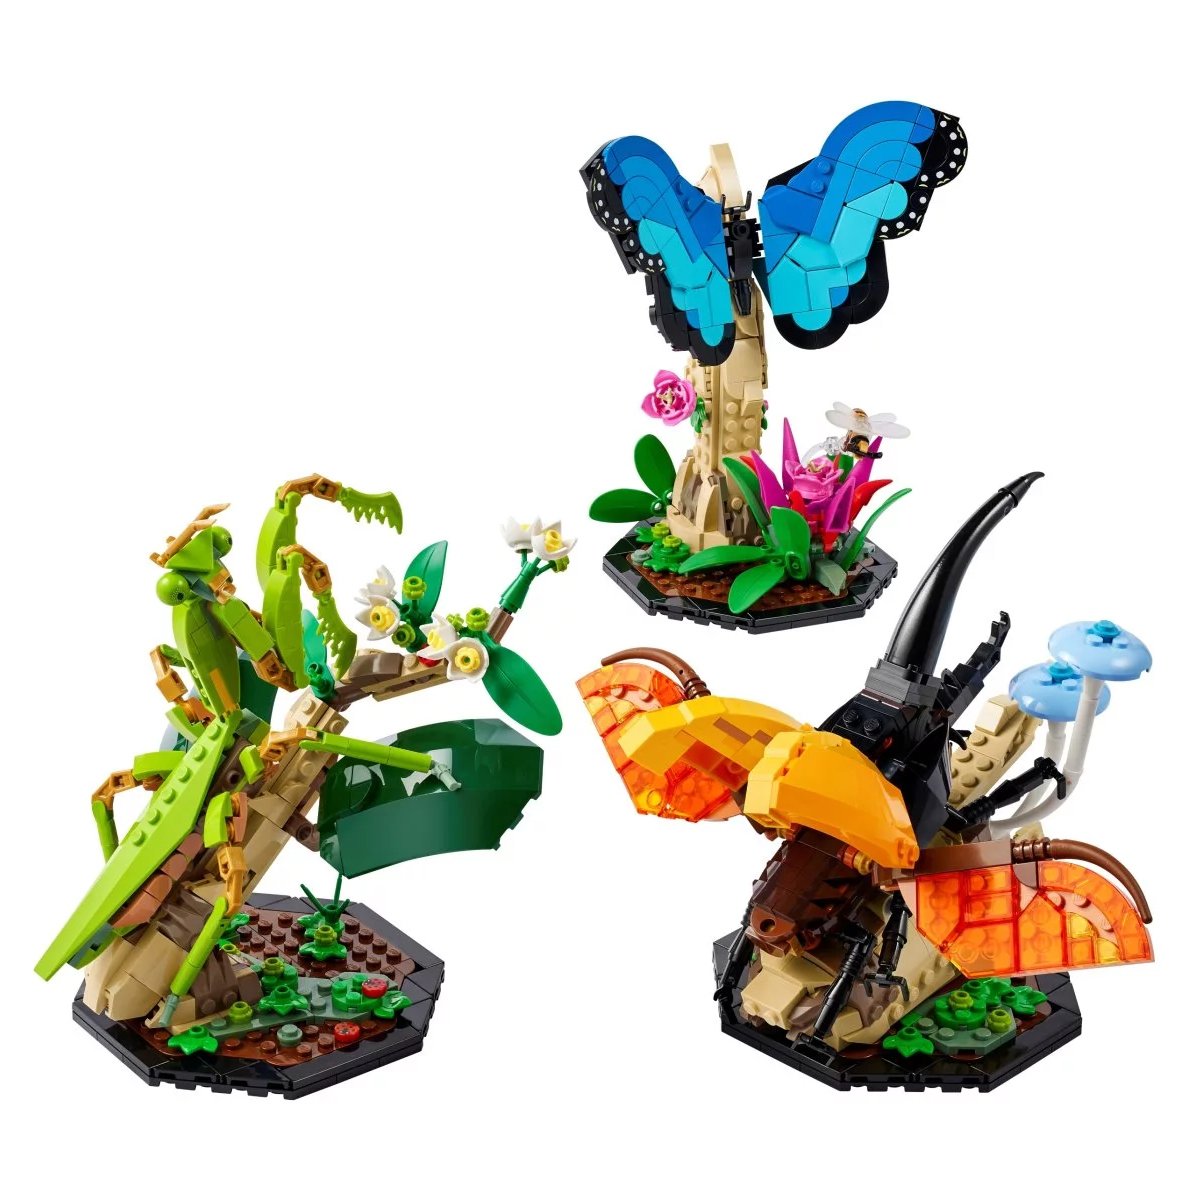 Конструктор Lego Ideas The Insect Collection 21342, 1111 деталей lego ideas 21342 коллекция насекомых